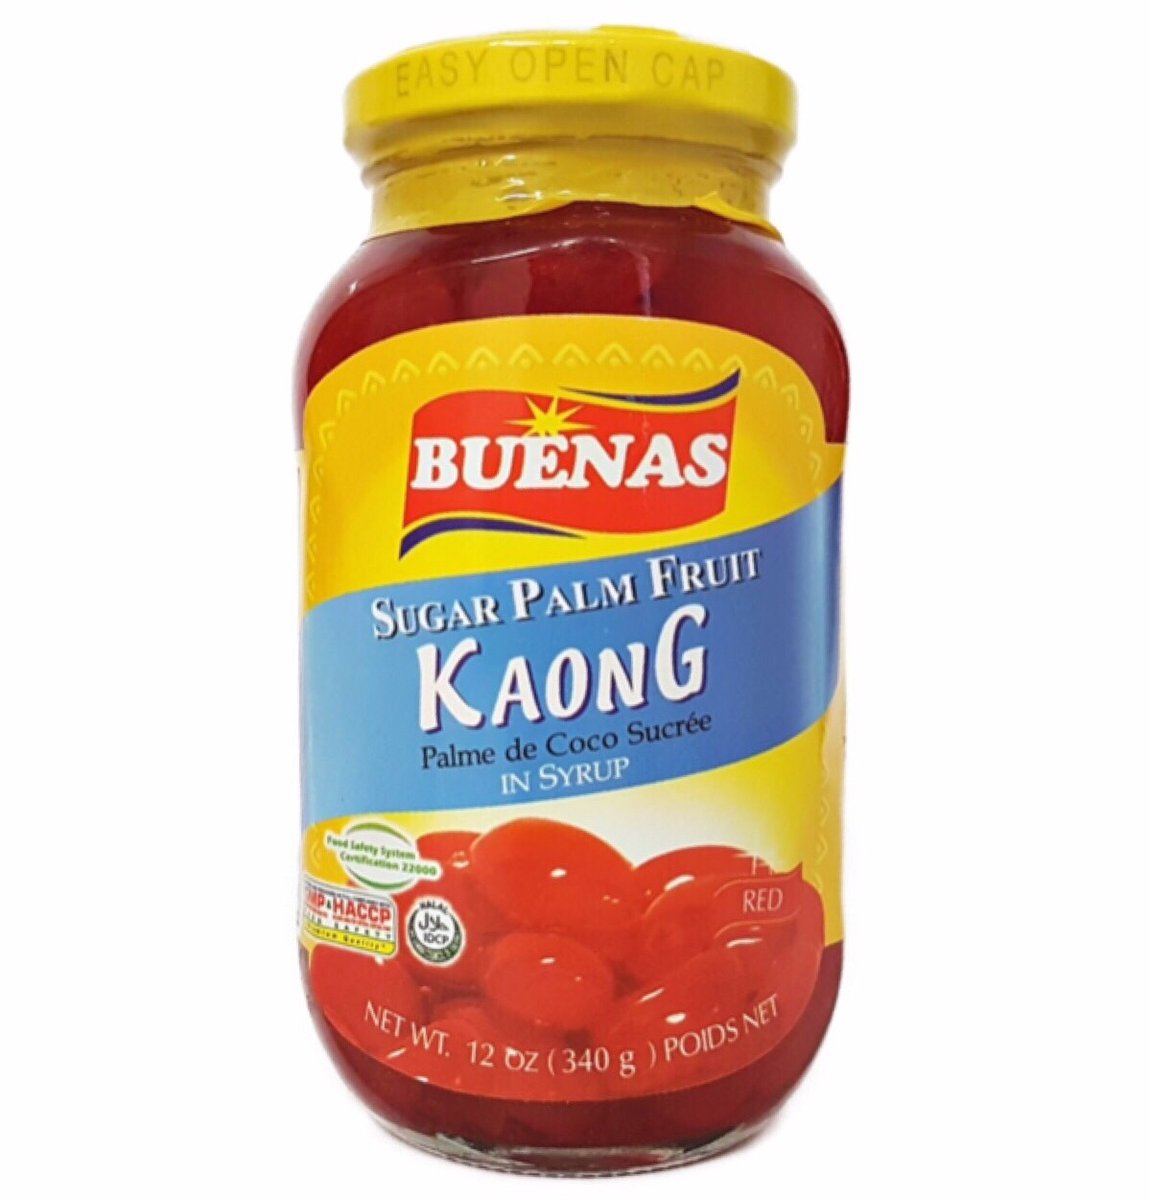 Buenas Kaong Red (Sugar Palm Fruit)